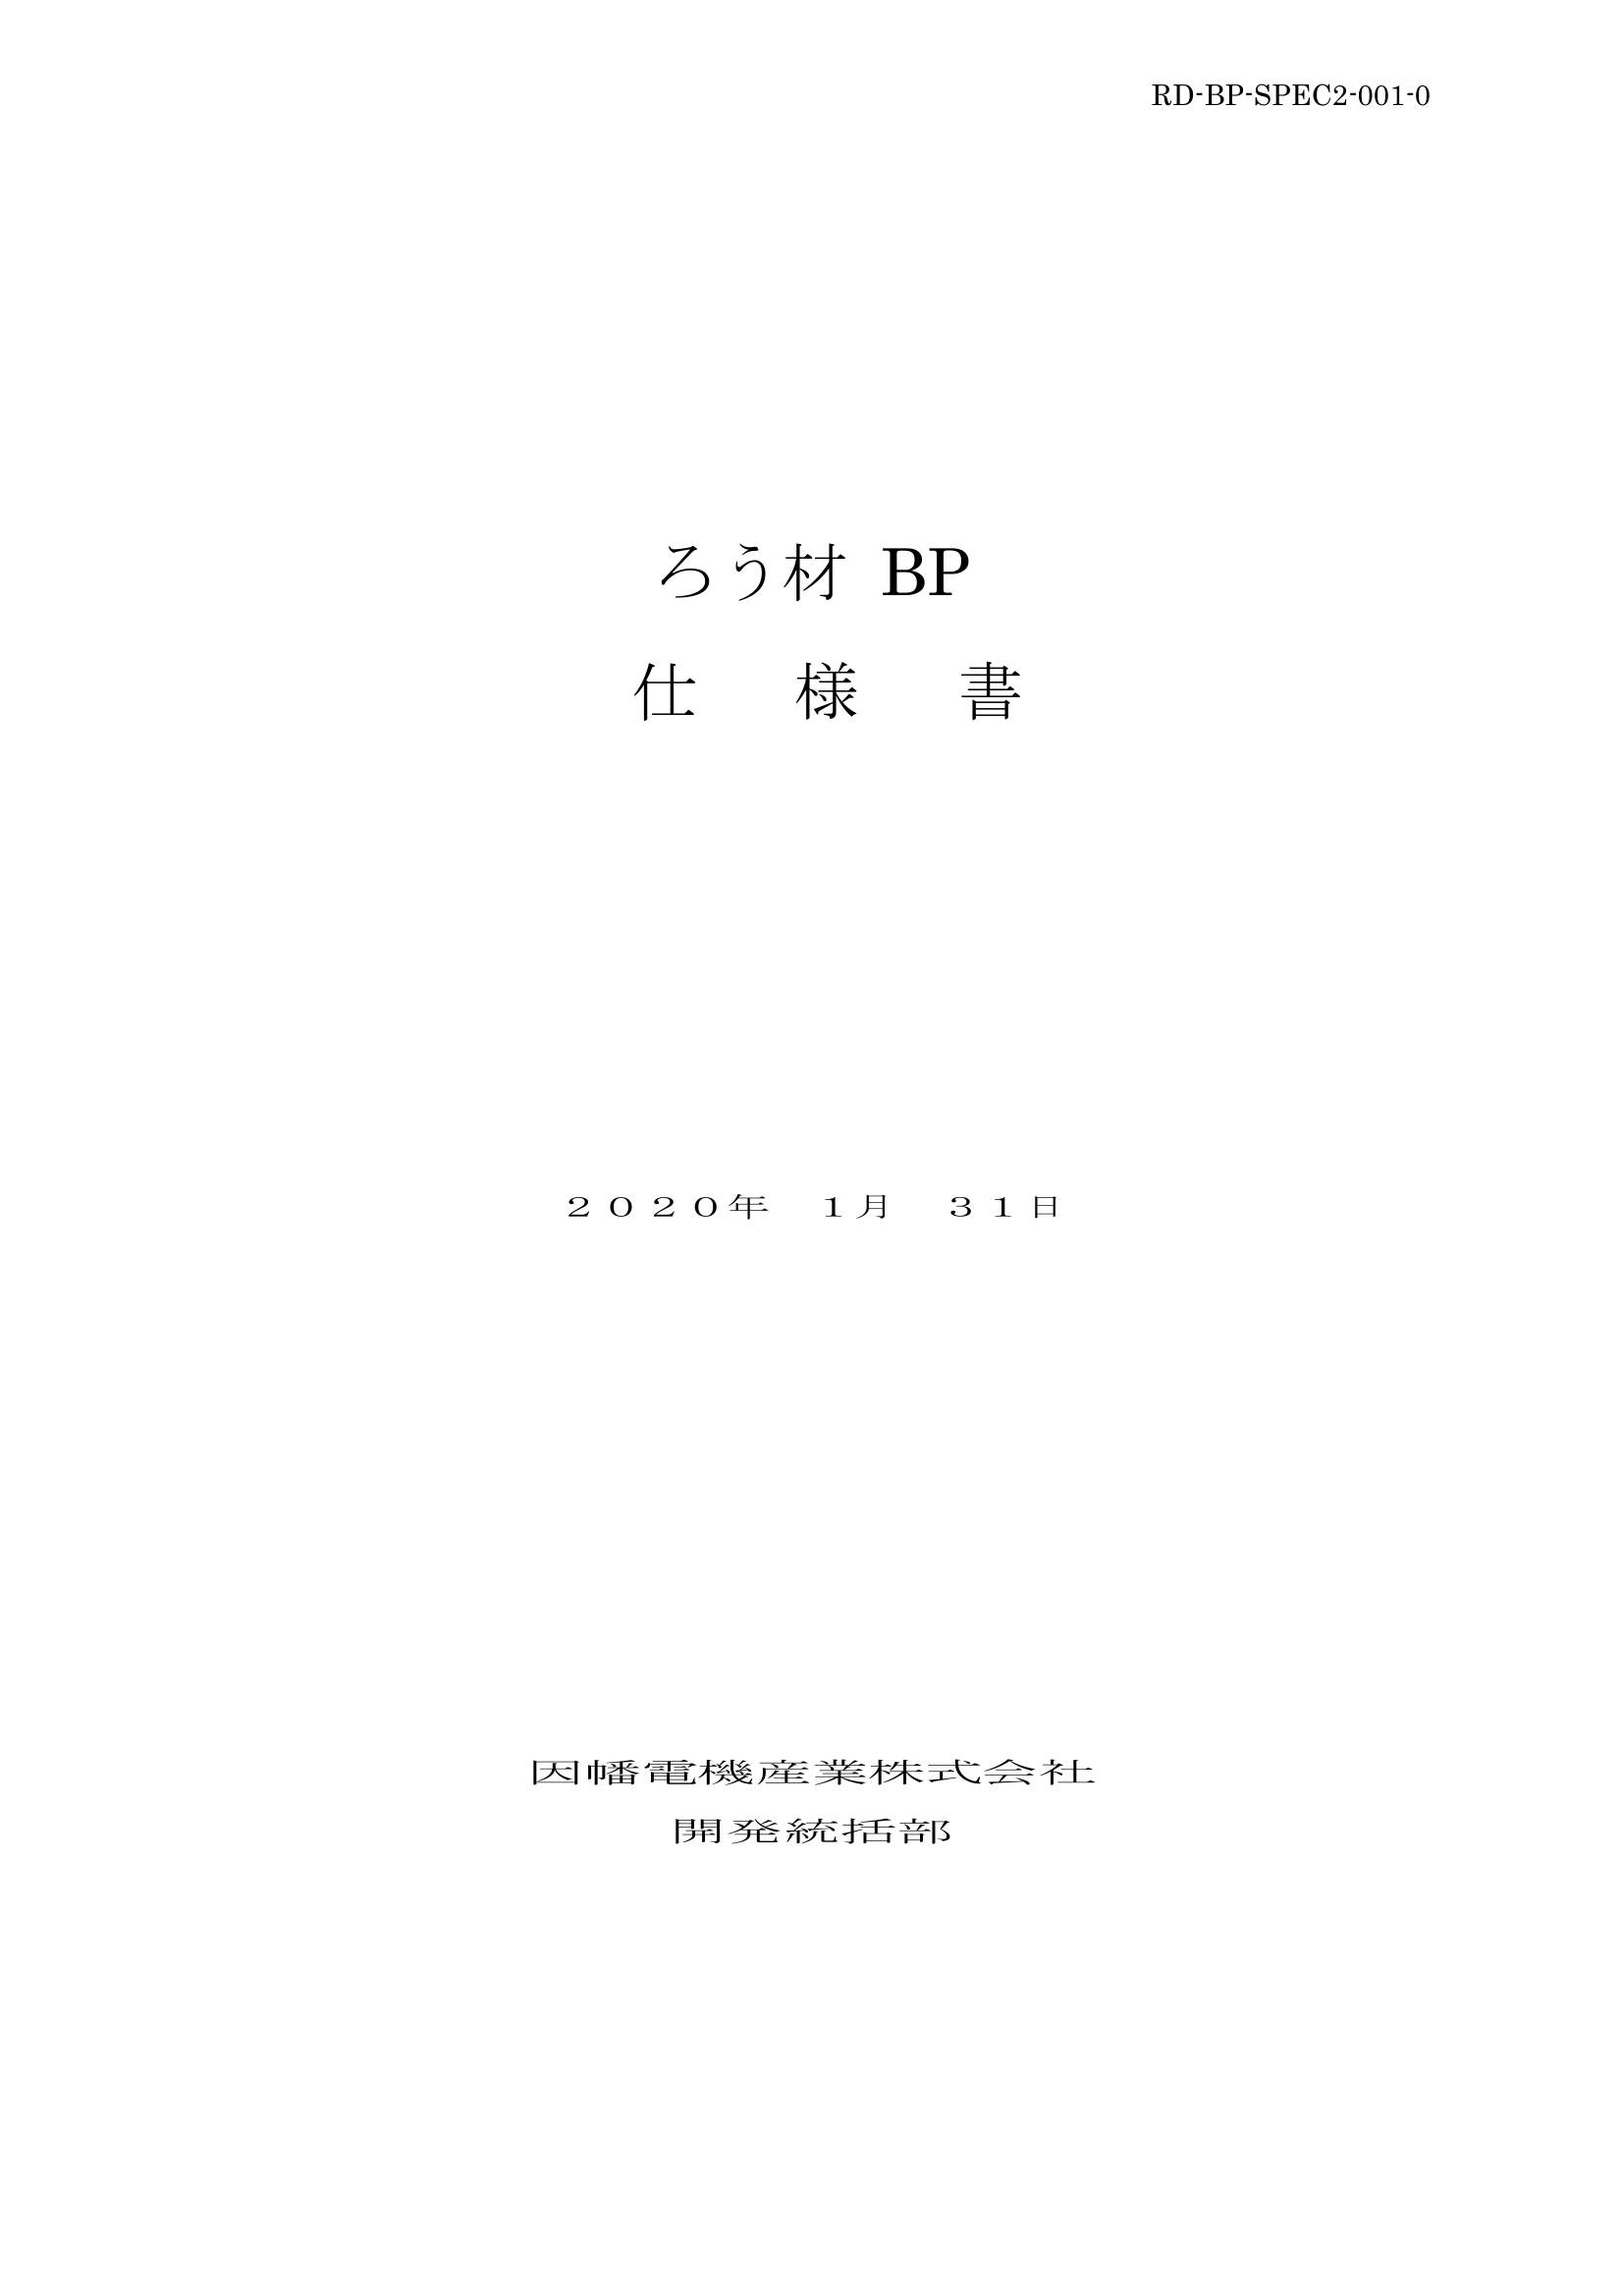 BP_仕様書_20200131.pdf